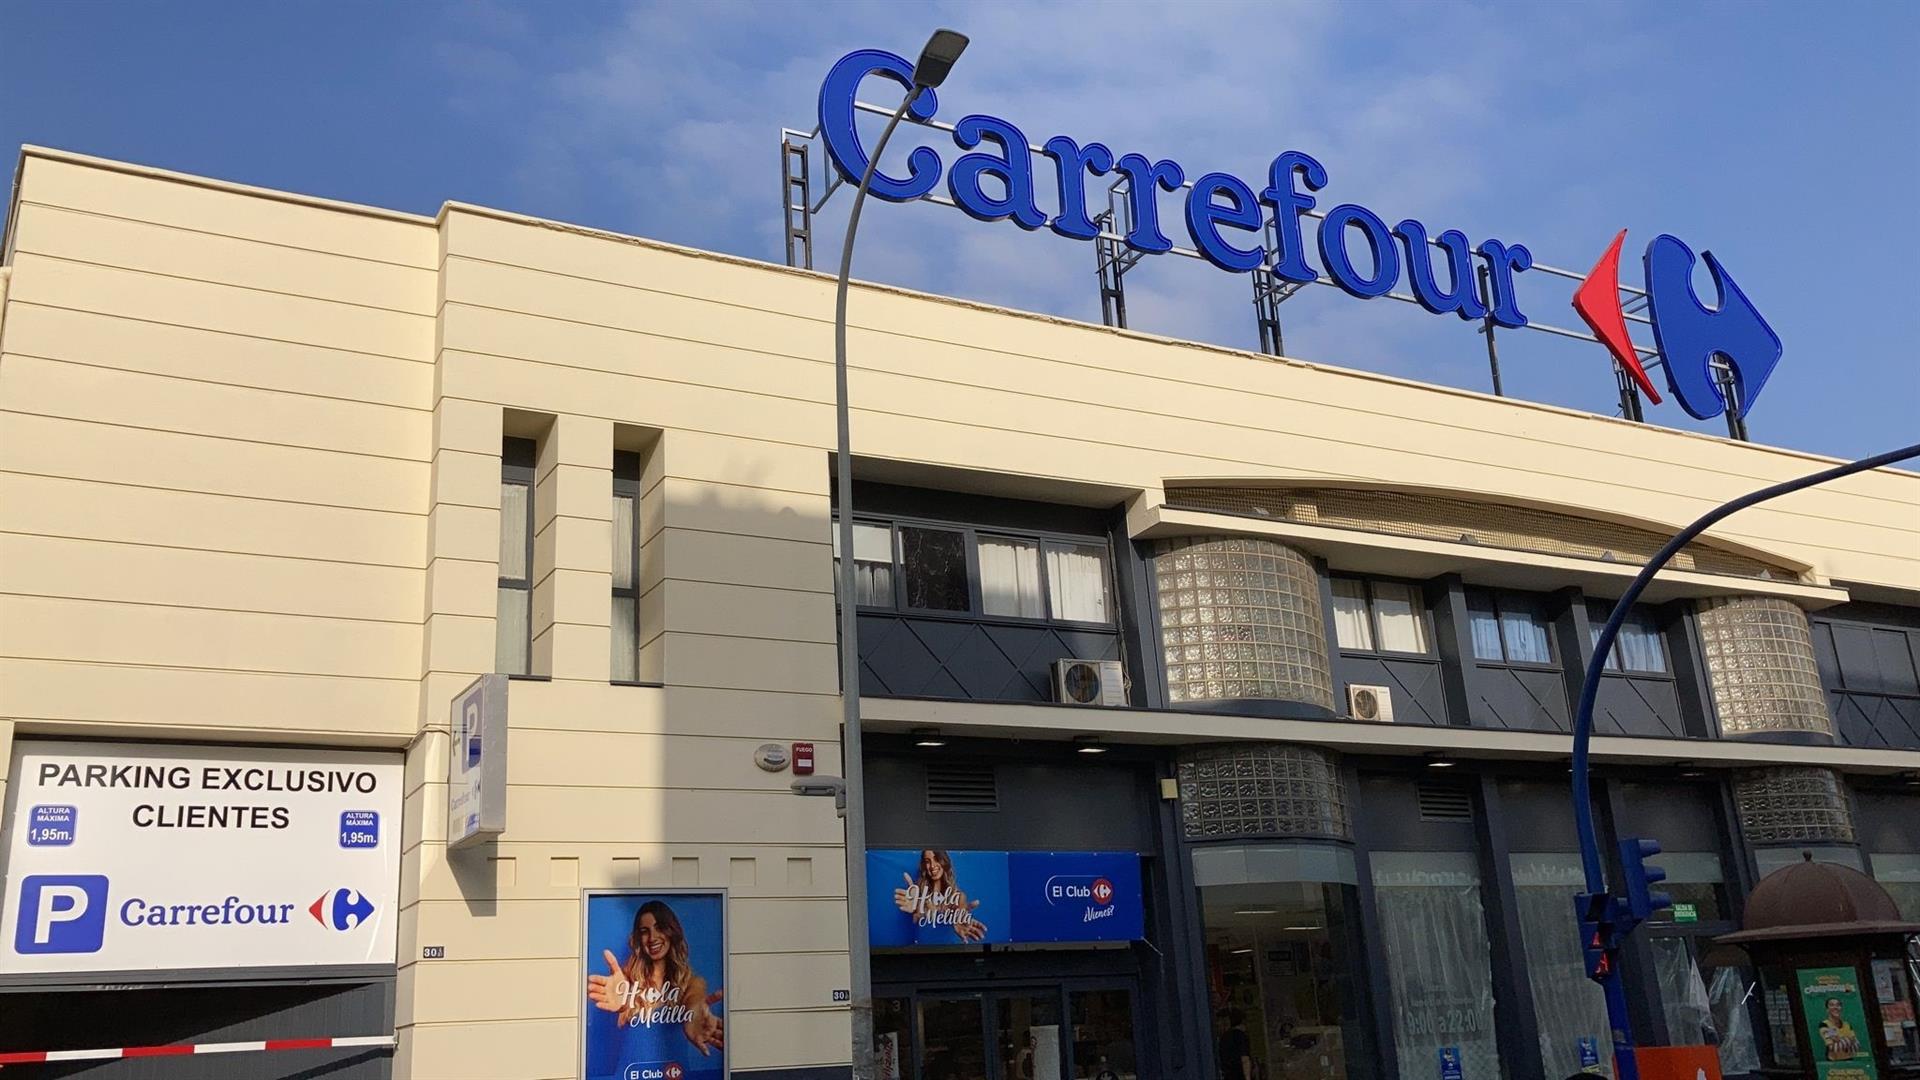 La mesa de jardín más barata cuesta 24 euros en Carrefour